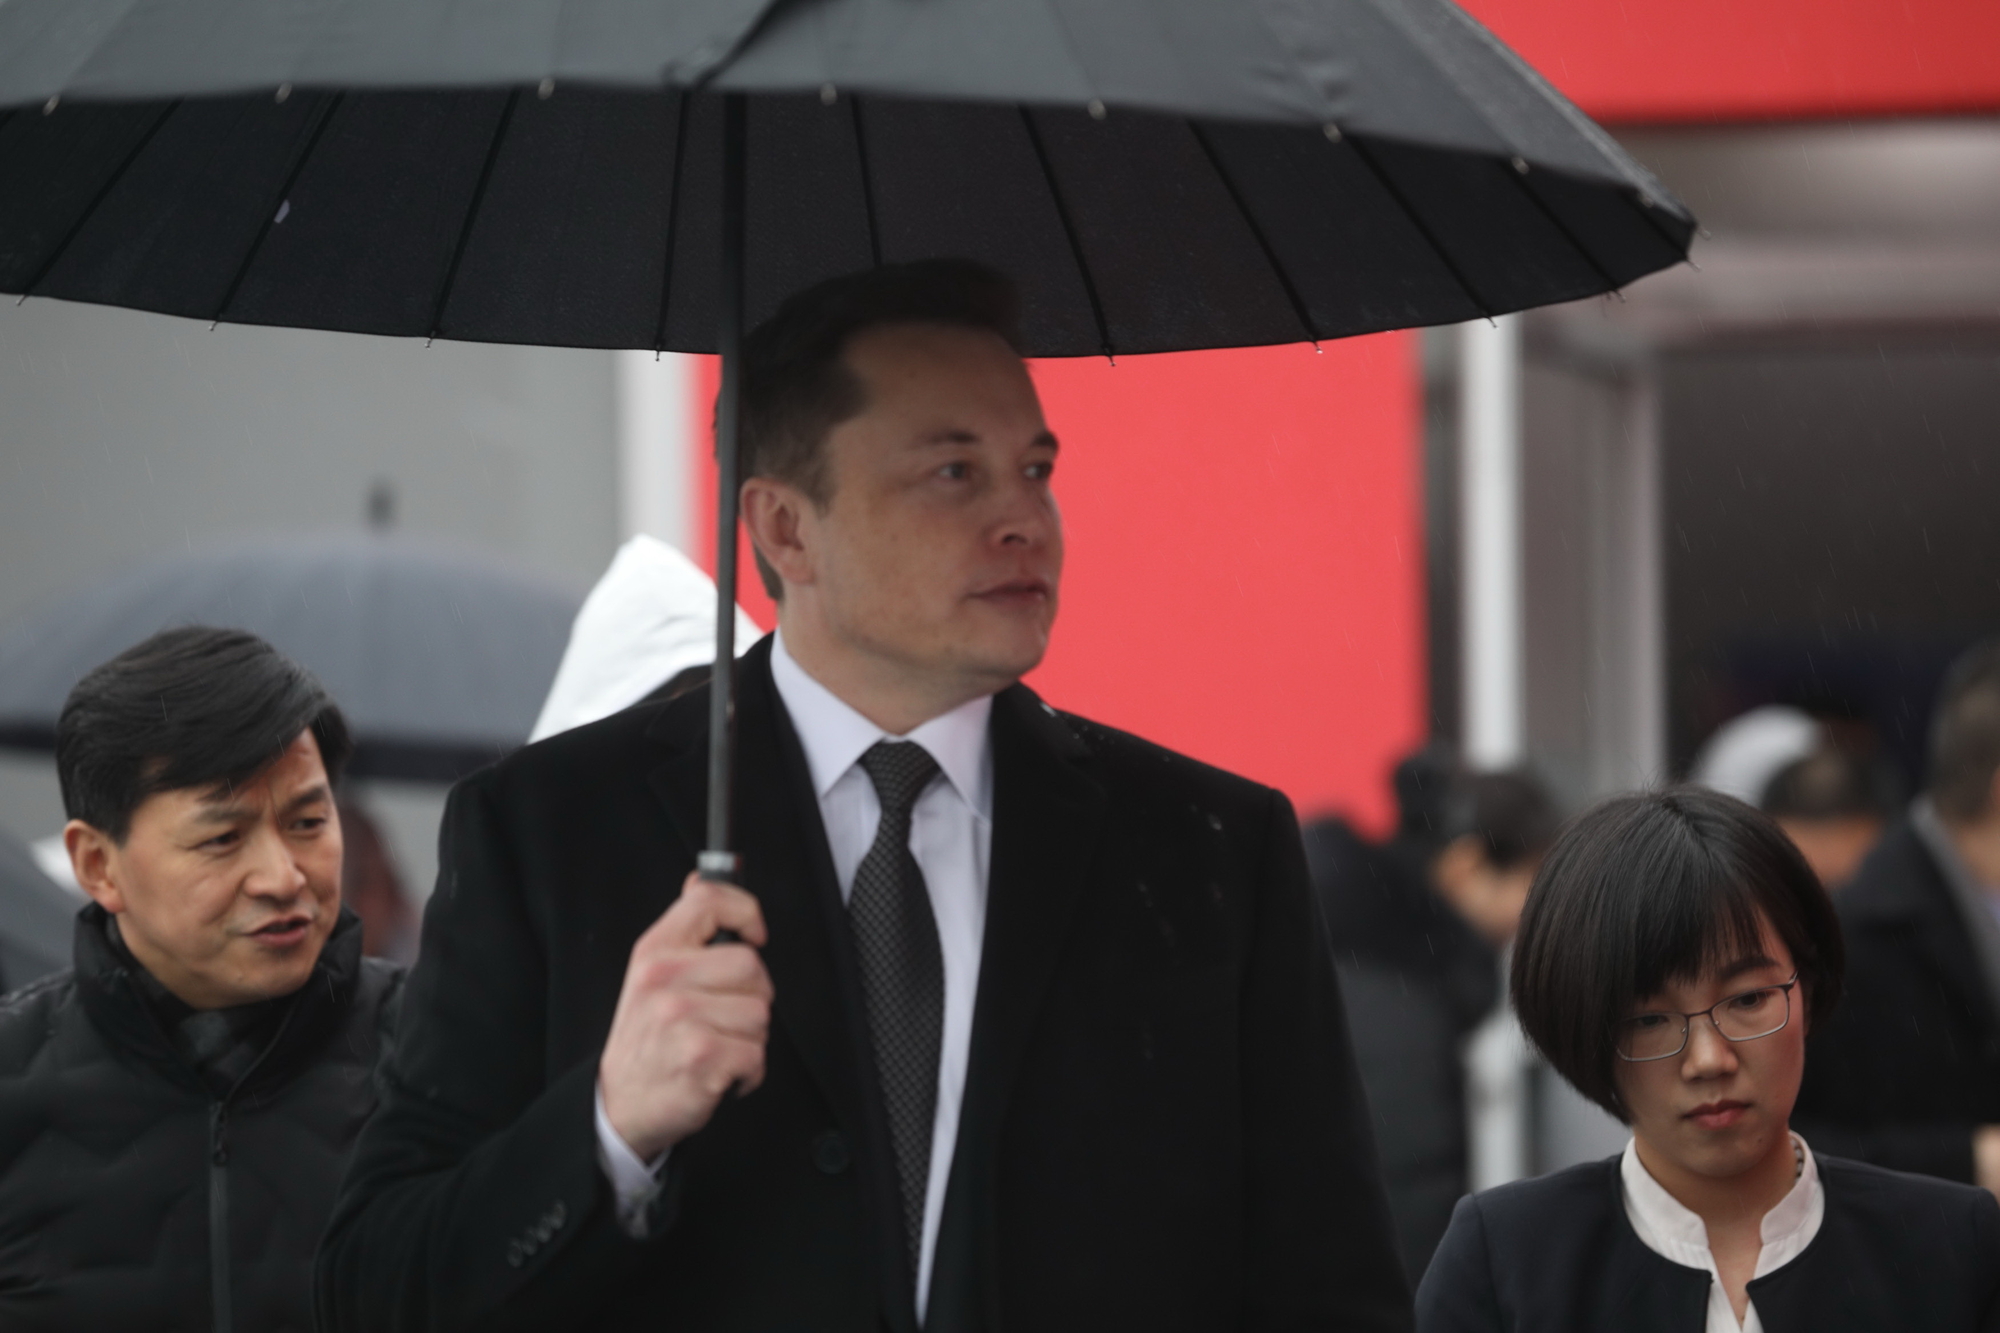 Elon Musk breaks ground on first Tesla factory outside US